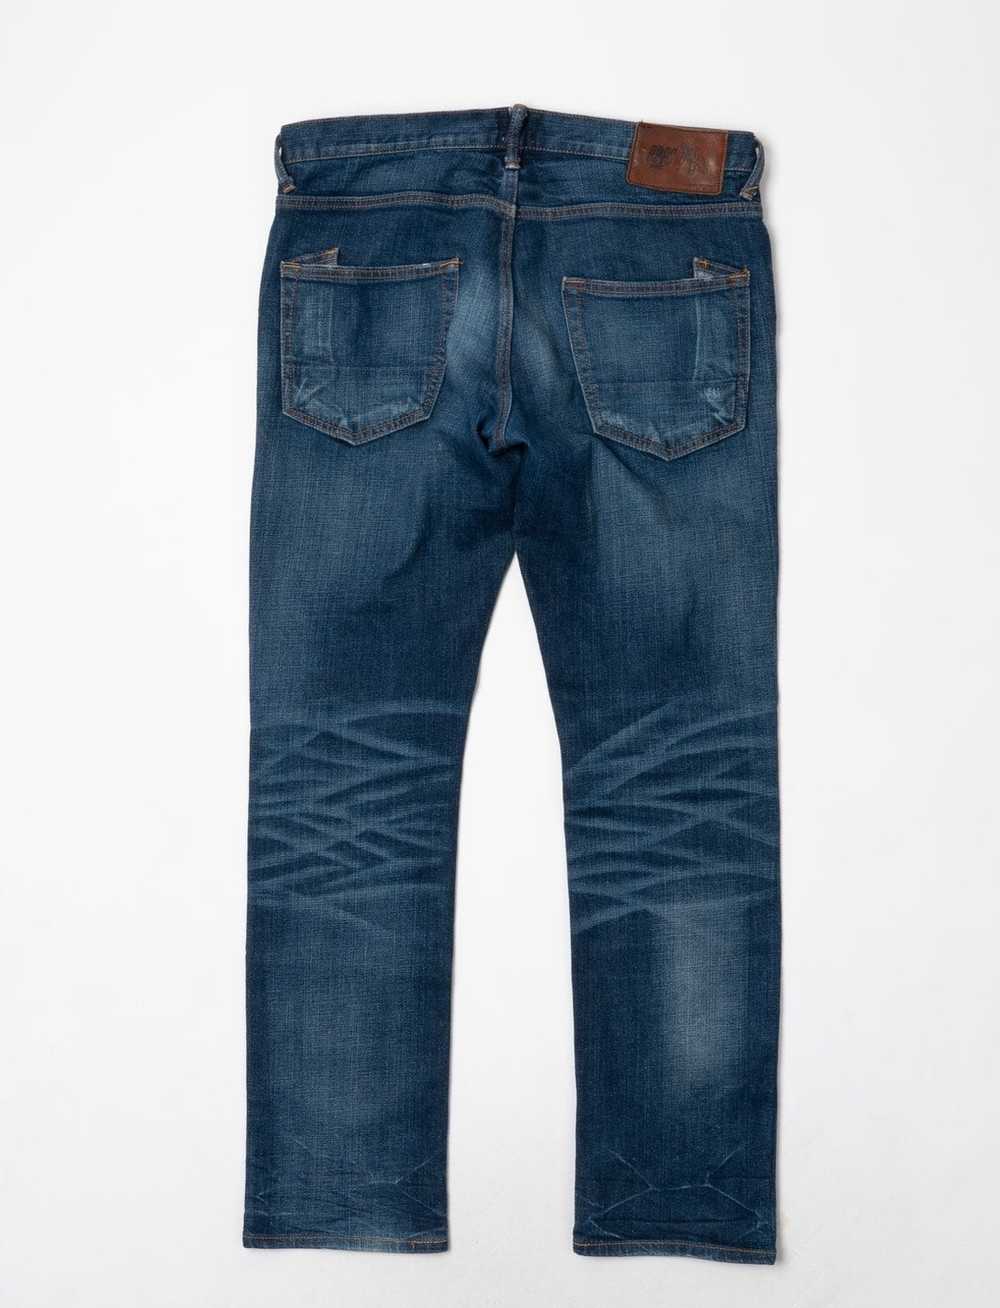 Prps prps gremlin stretch jeans - image 6